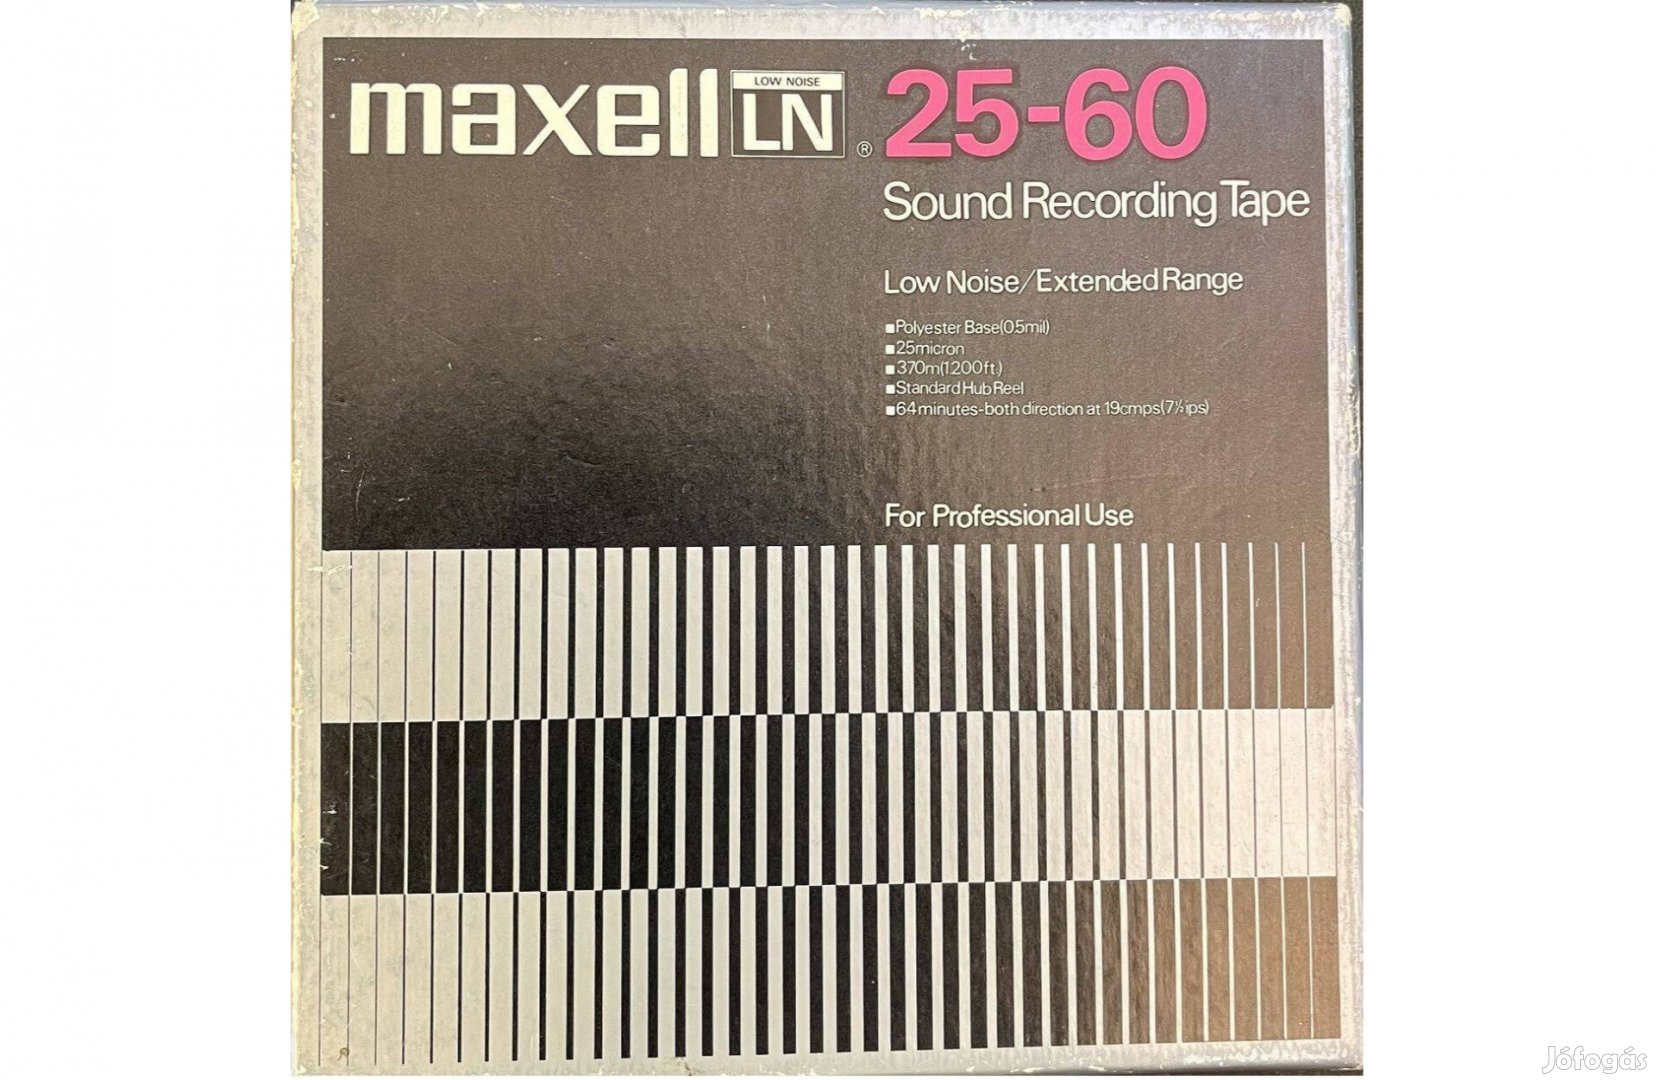 Maxell LN 25-60 magnószalag magnetofon orsós szalag